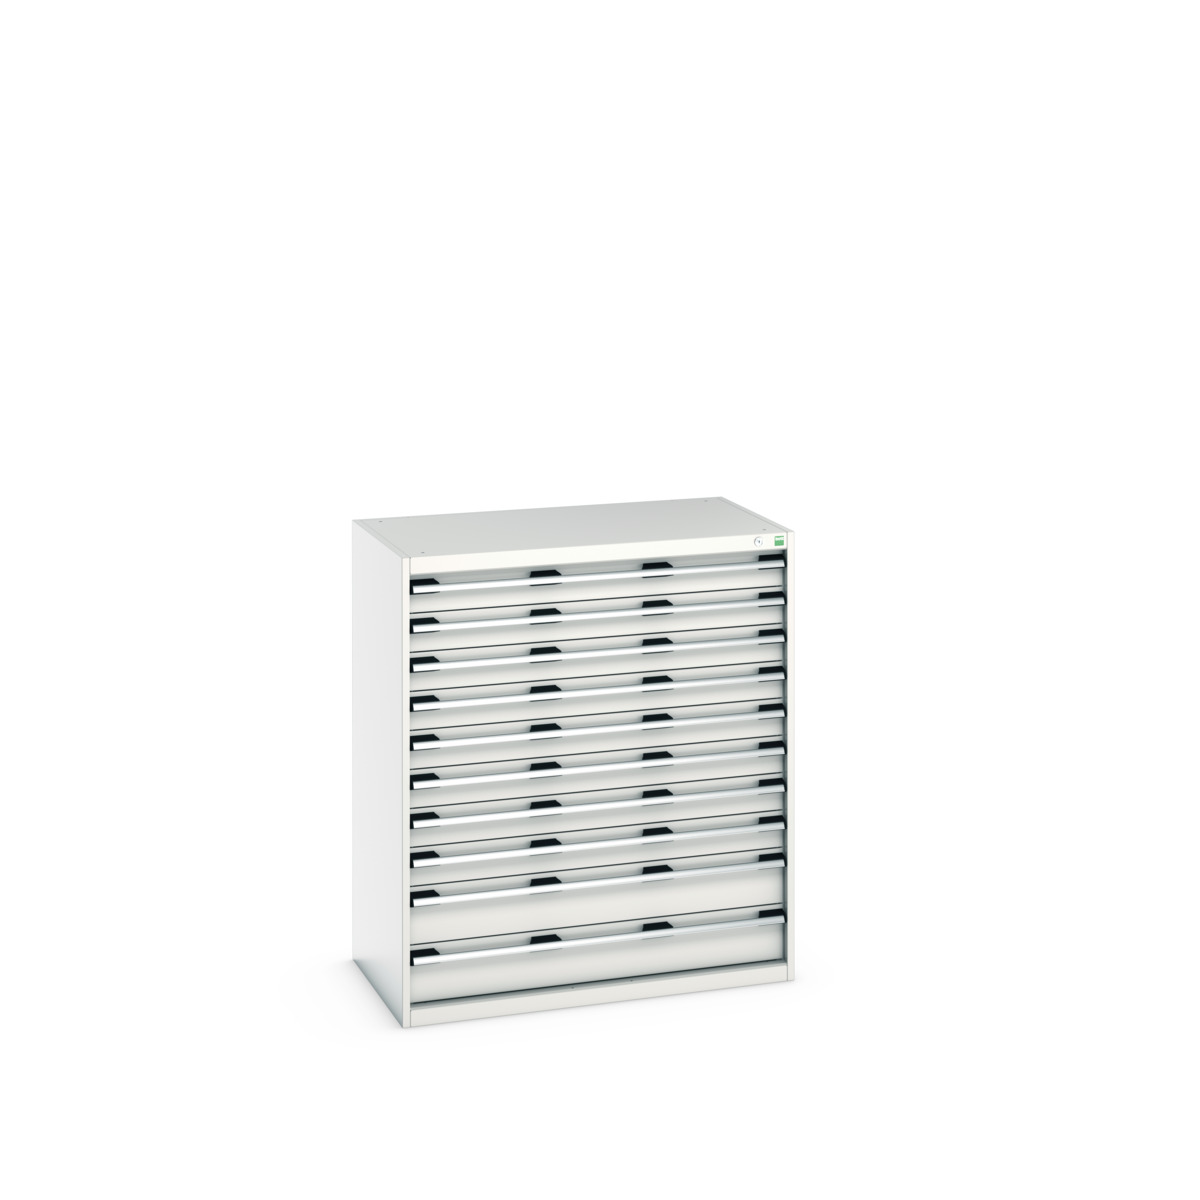 40021041.16V - cubio drawer cabinet